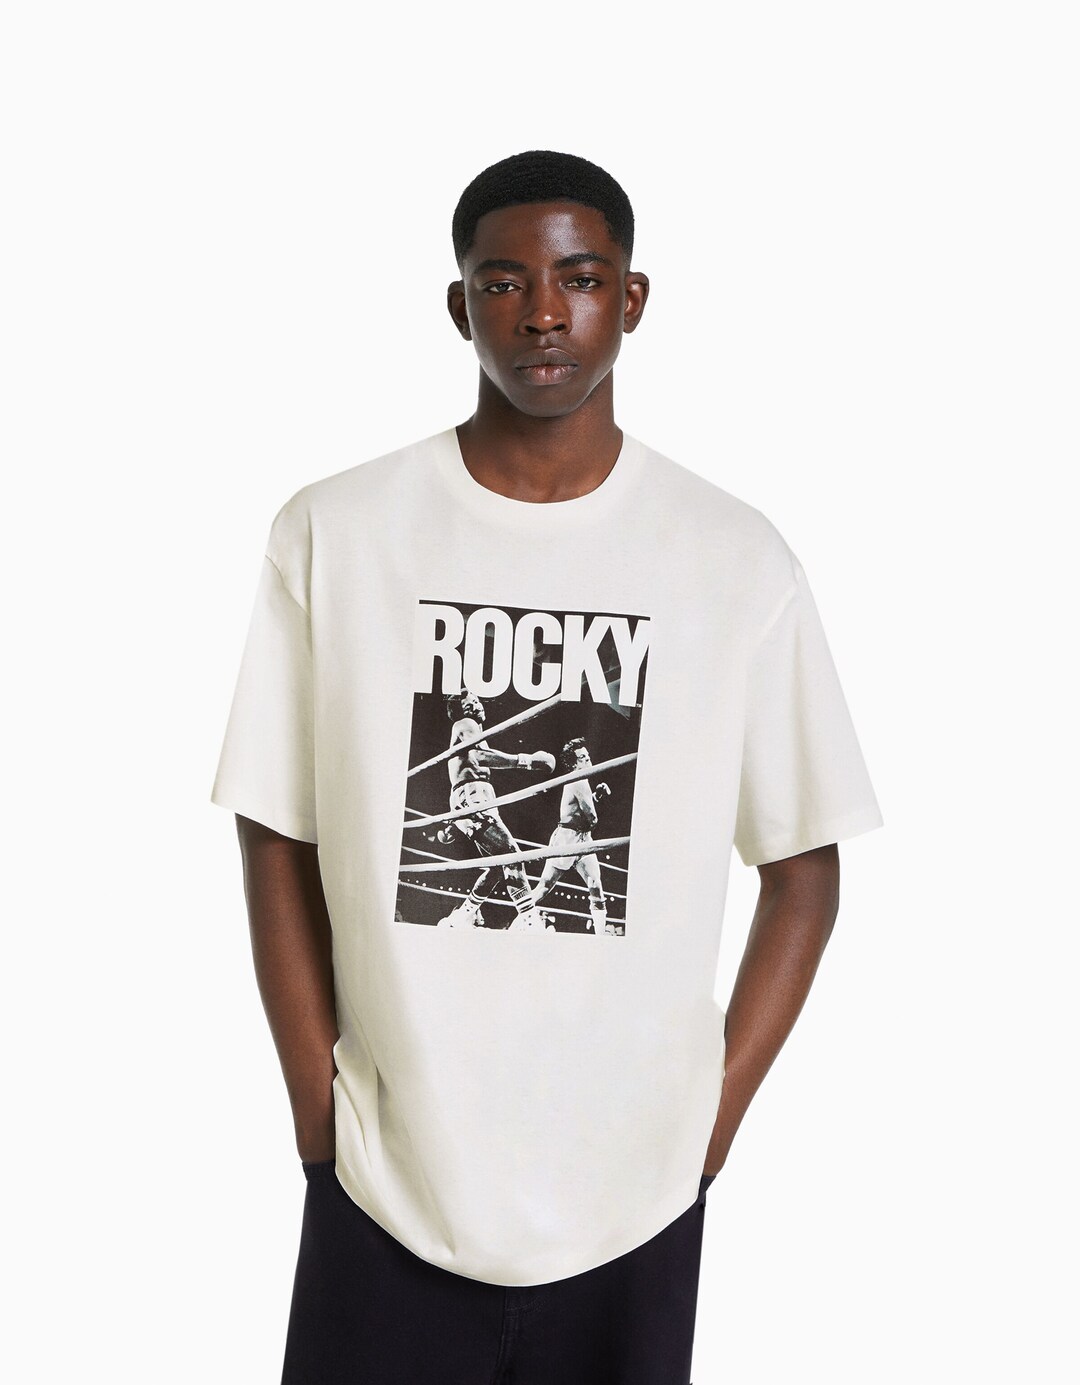 Camiseta Rocky manga corta boxy fit